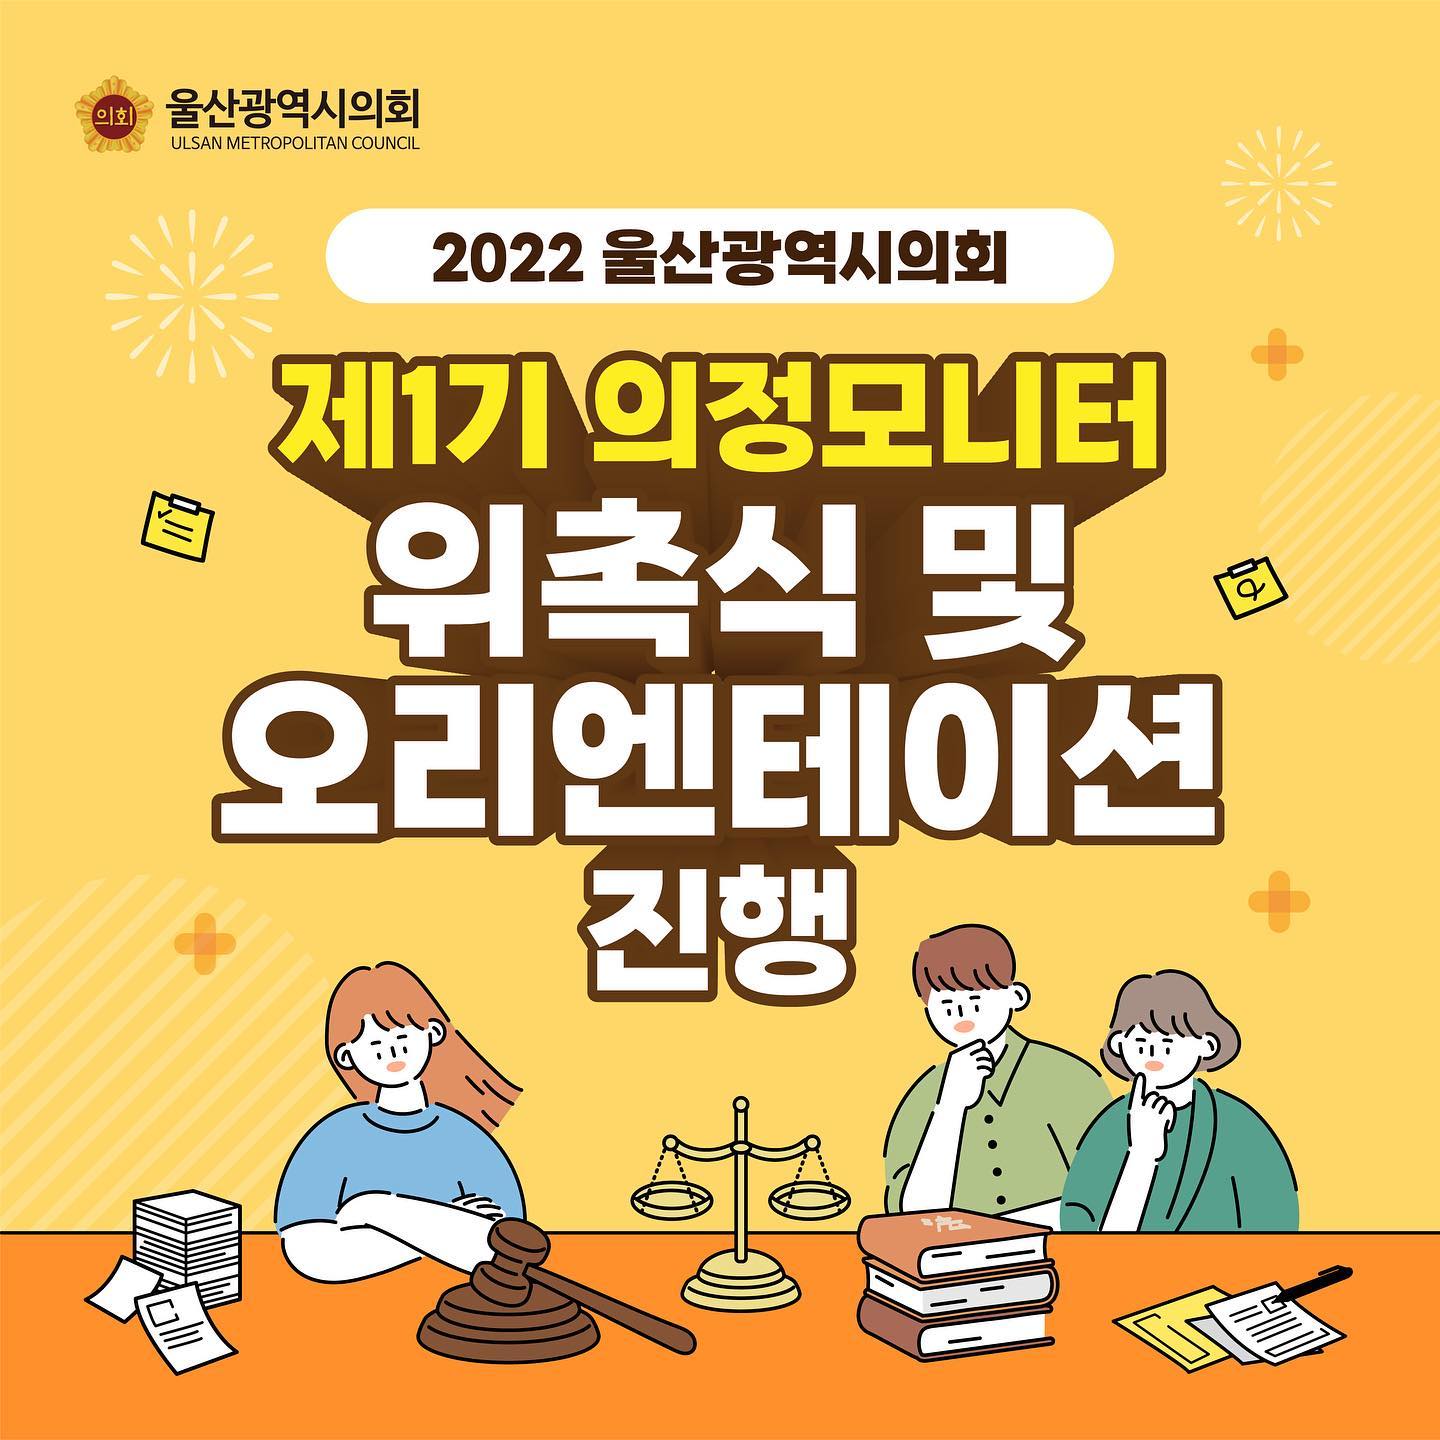 2022 울산광역시의회 제1기 의정모니터 위촉식 및 오리엔테이션 진행1